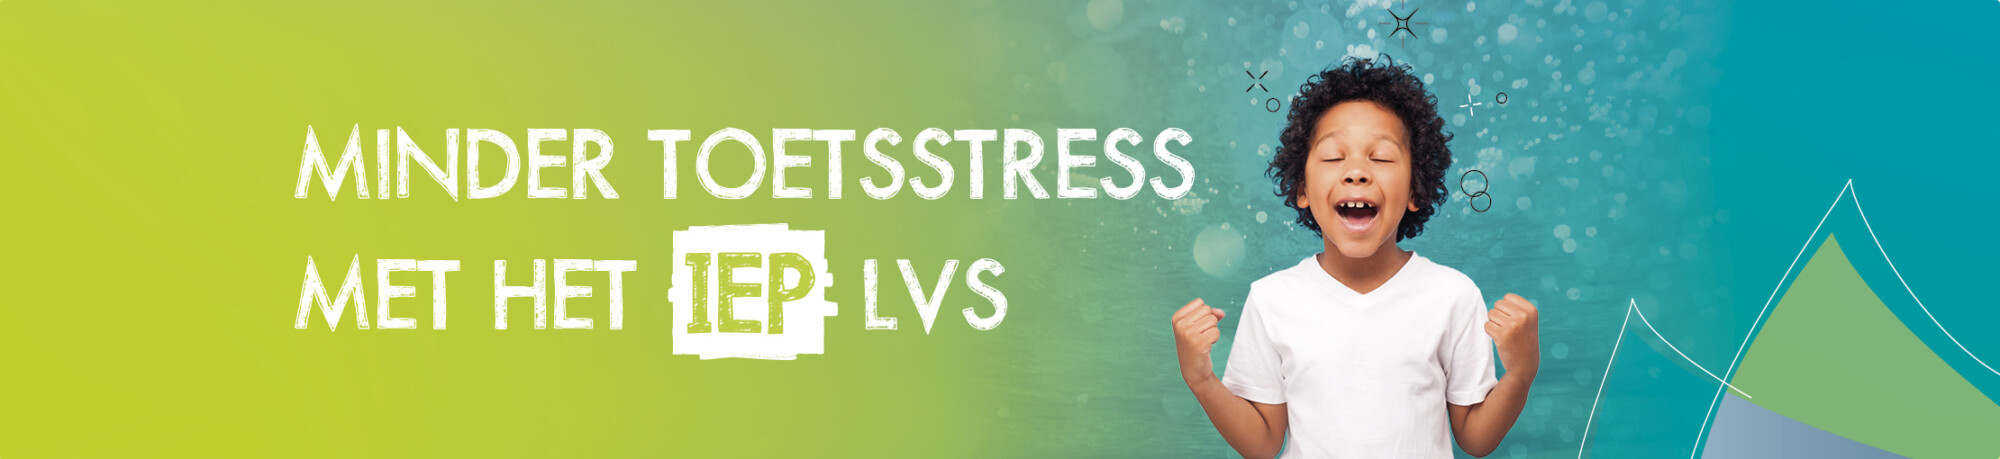 Minder toetsstress met het IEP LVS